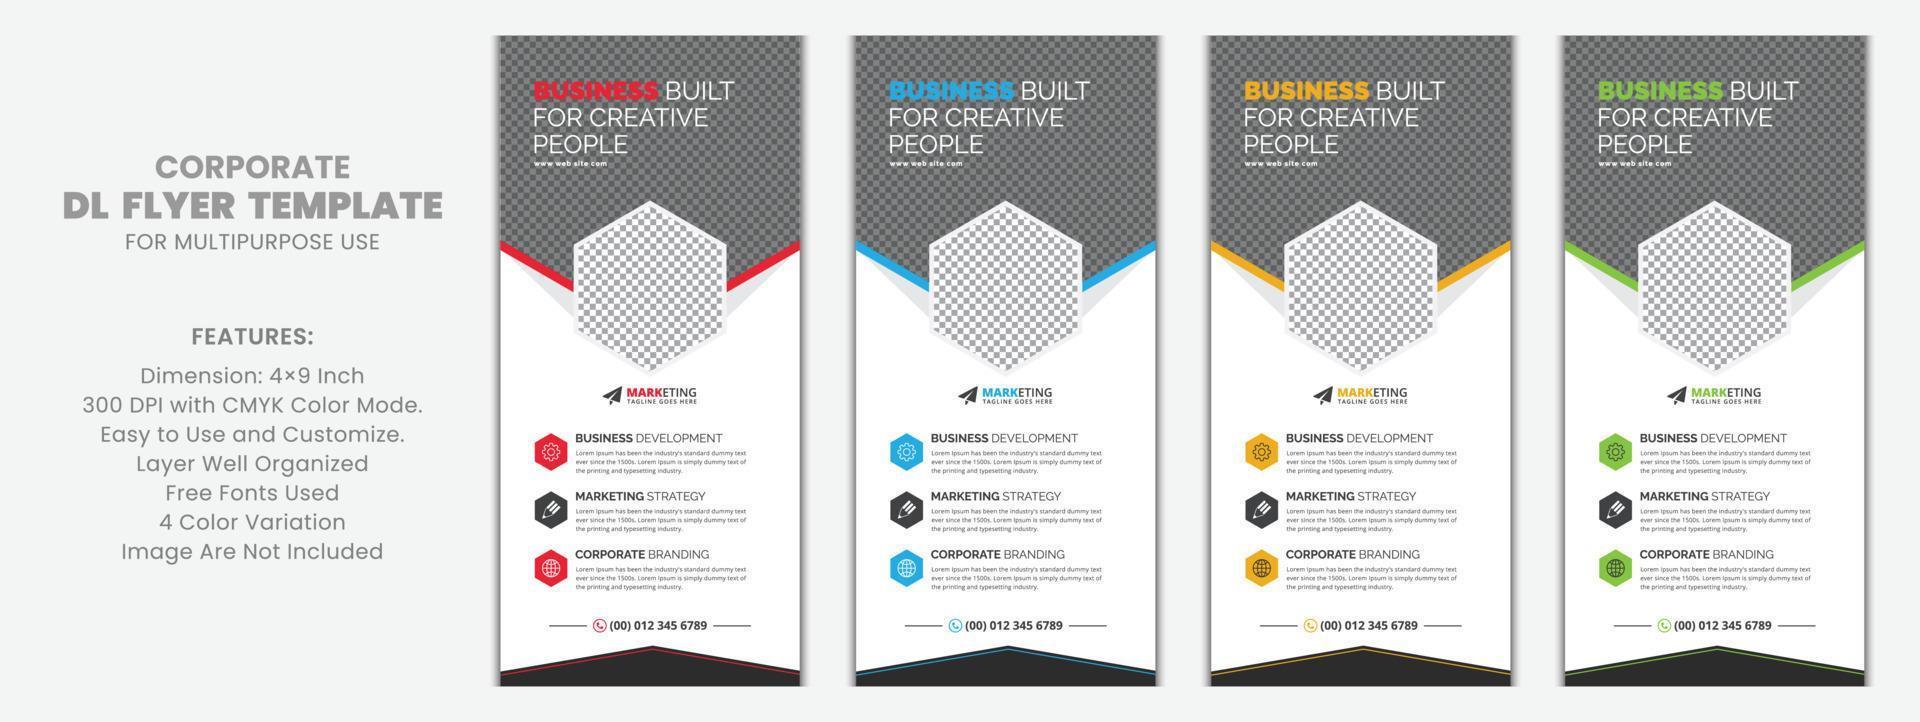 corporate dl flyer rack card vector sjabloonontwerp voor business, marketing, reclame, multifunctioneel gebruik met rode, blauwe, gele en groene kleurvariaties